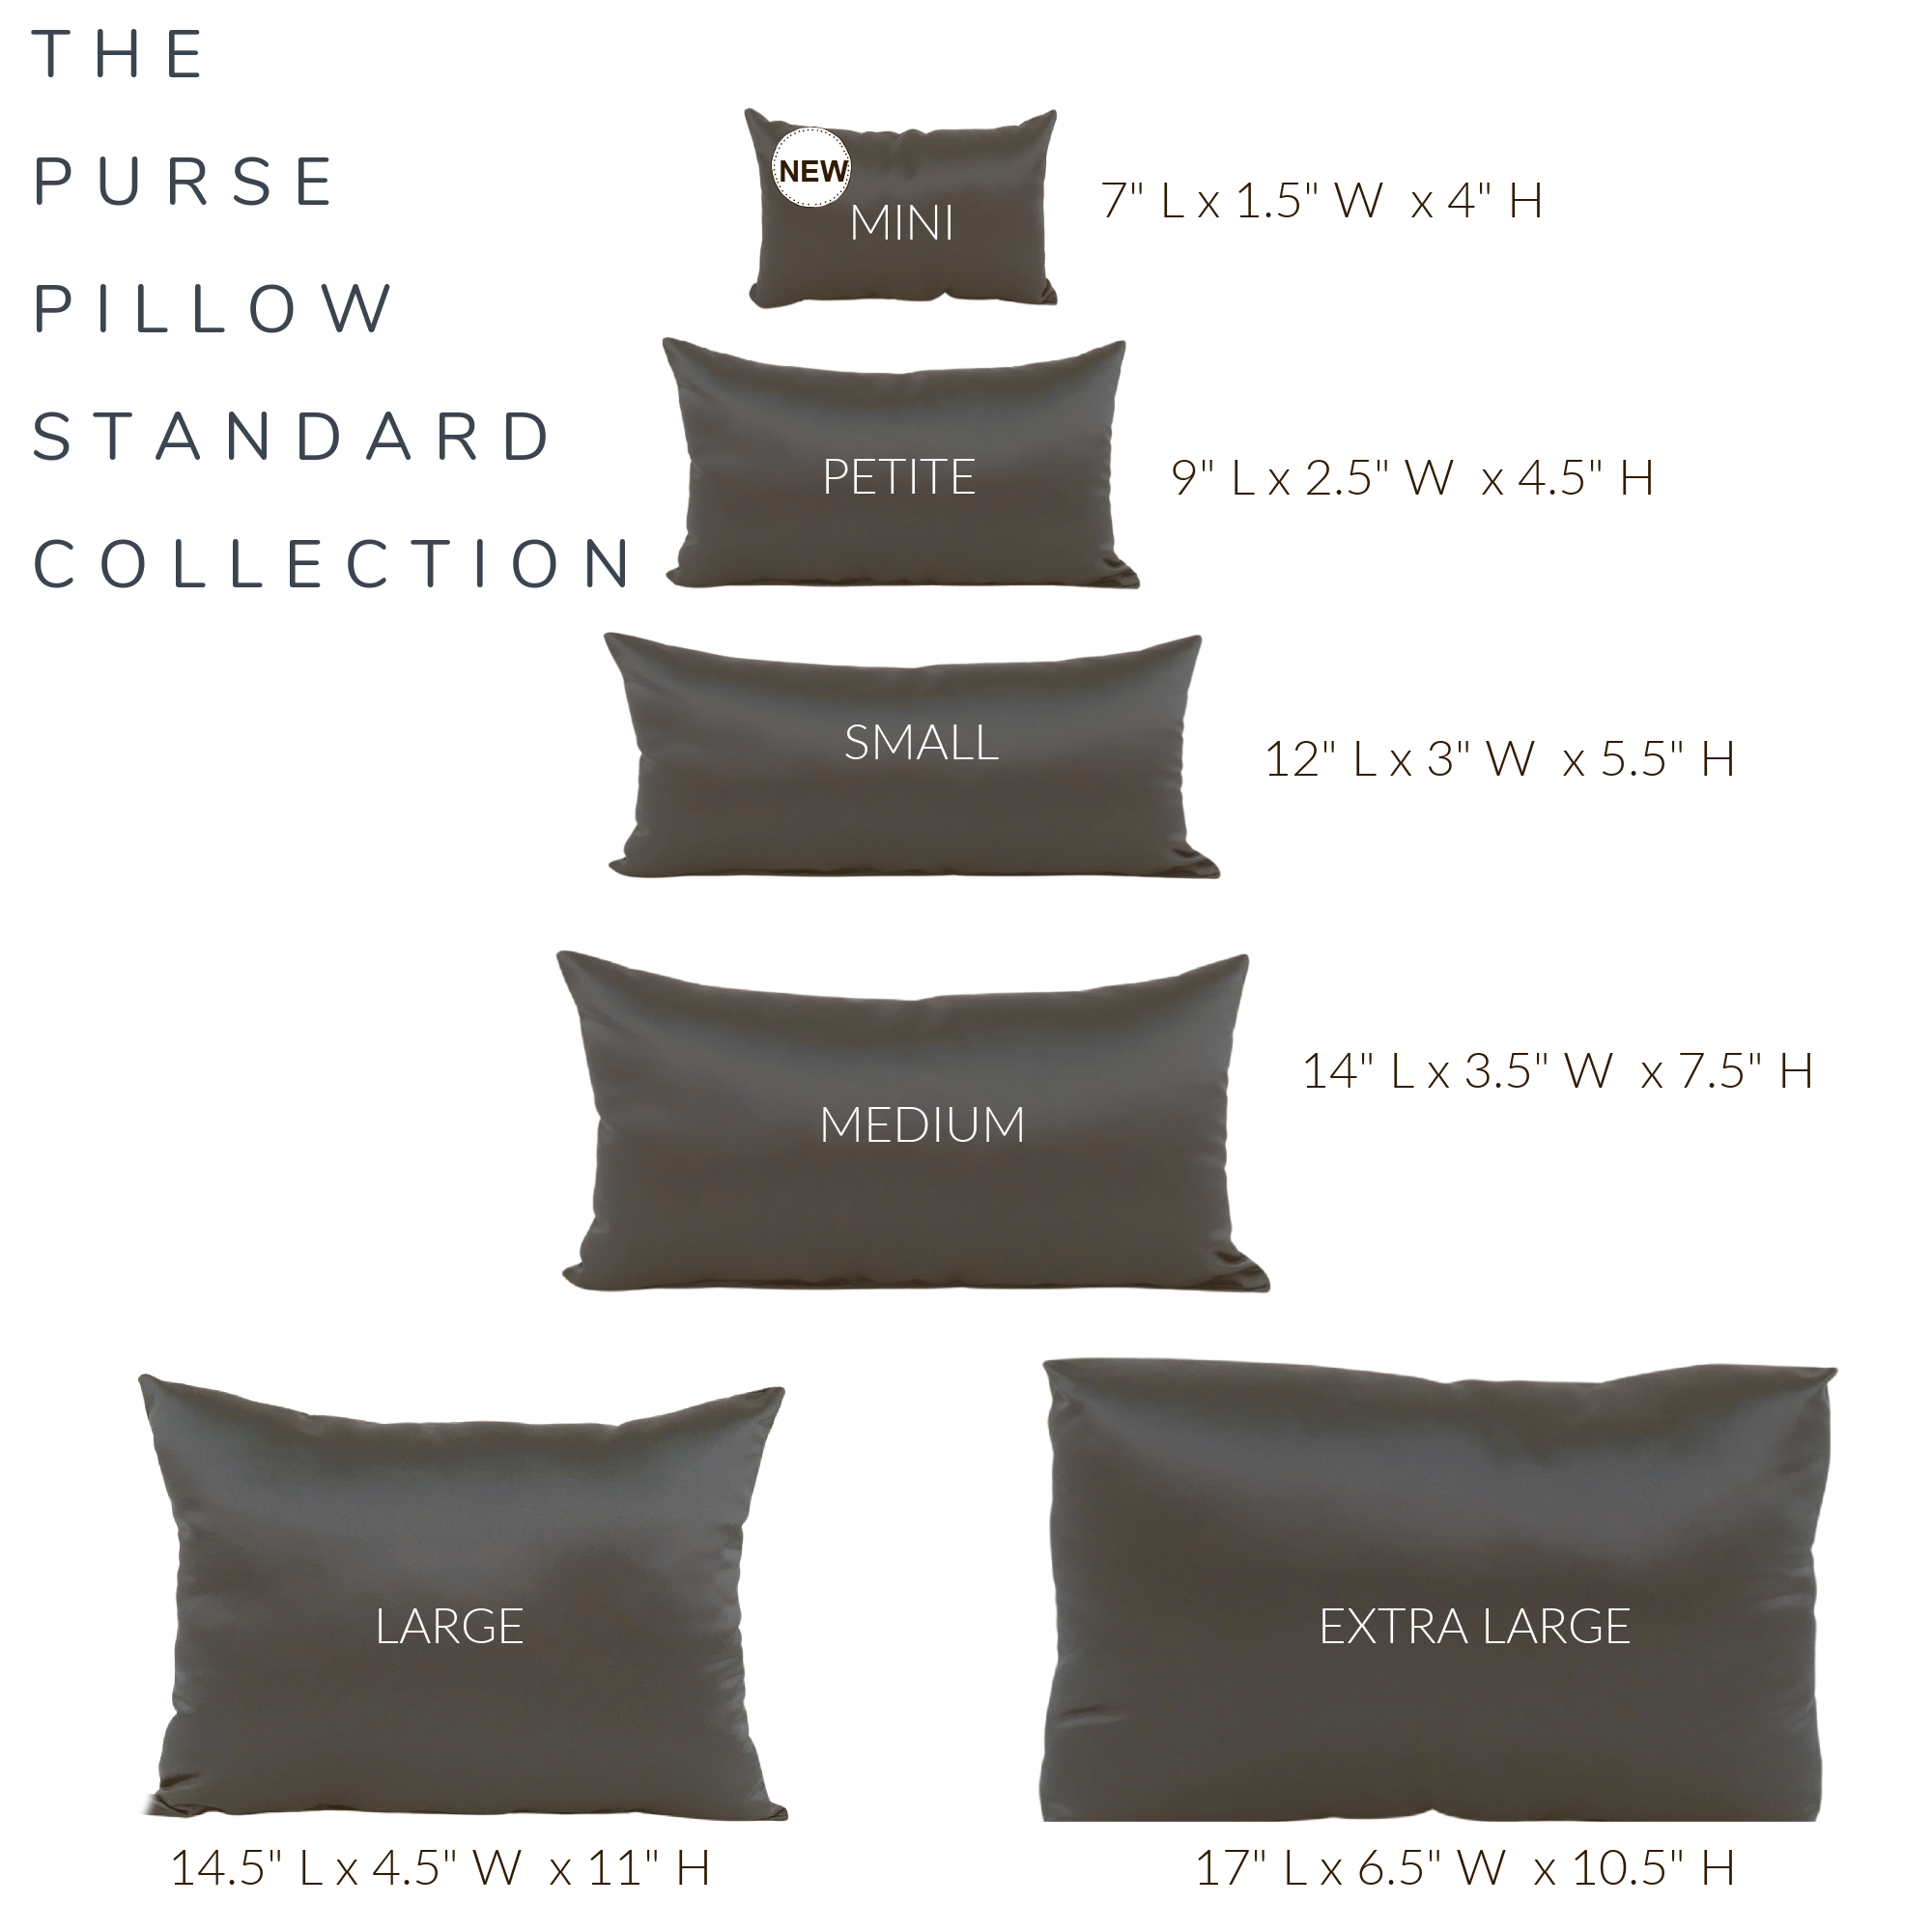 Handbag Pillow Shapers Inserts-Purse Pillows